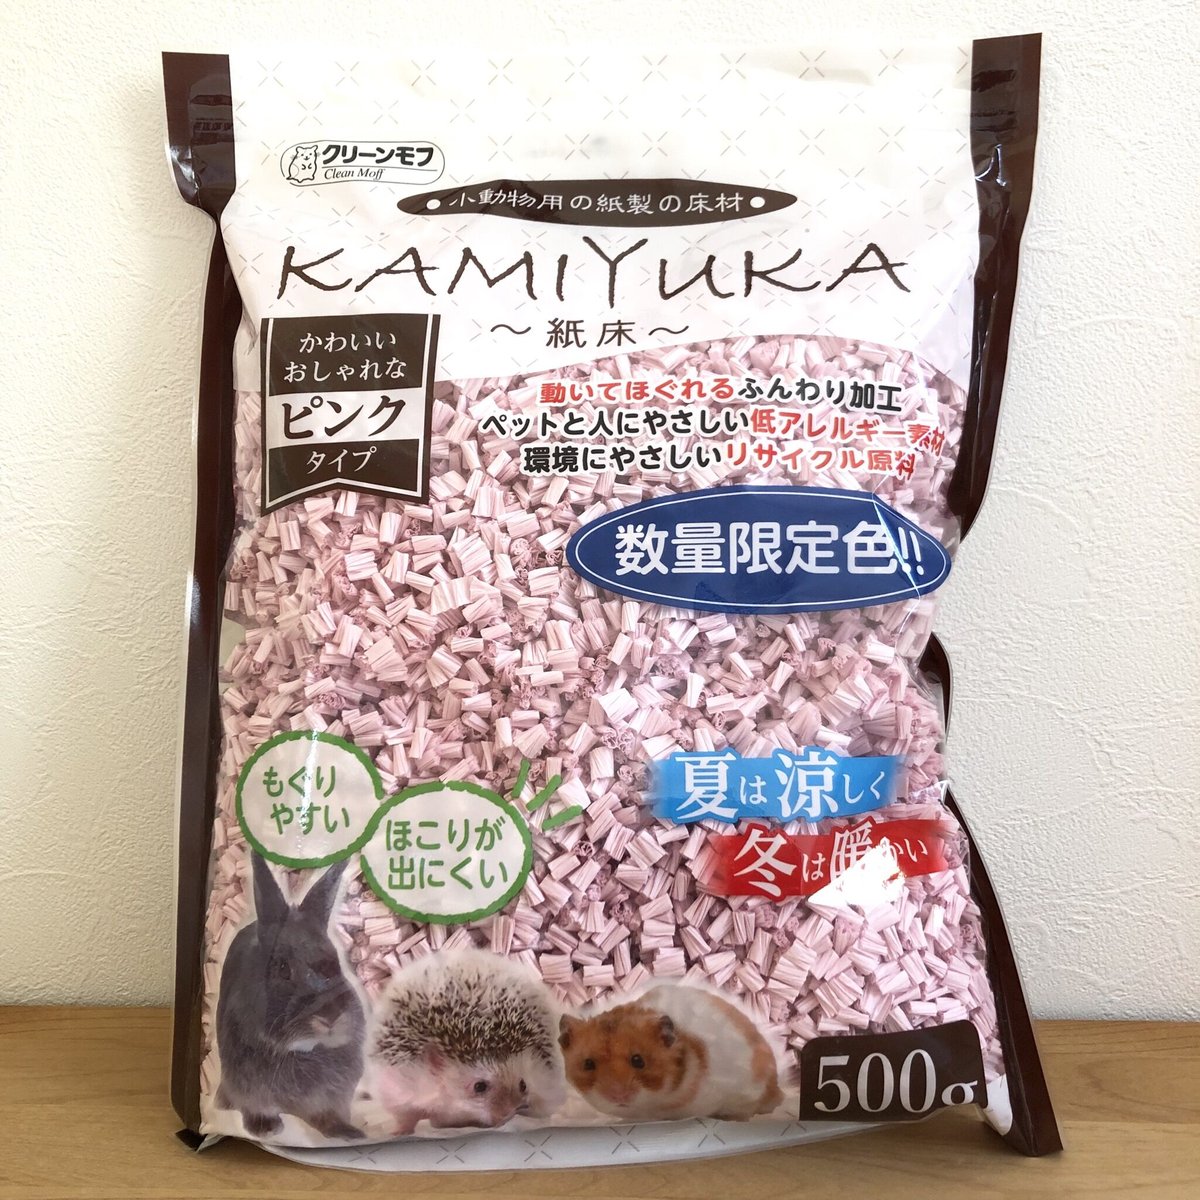 クリーンモフ 小動物用床材 KAMIYUKA 紙床 ピンク ( 500g*6袋セット )